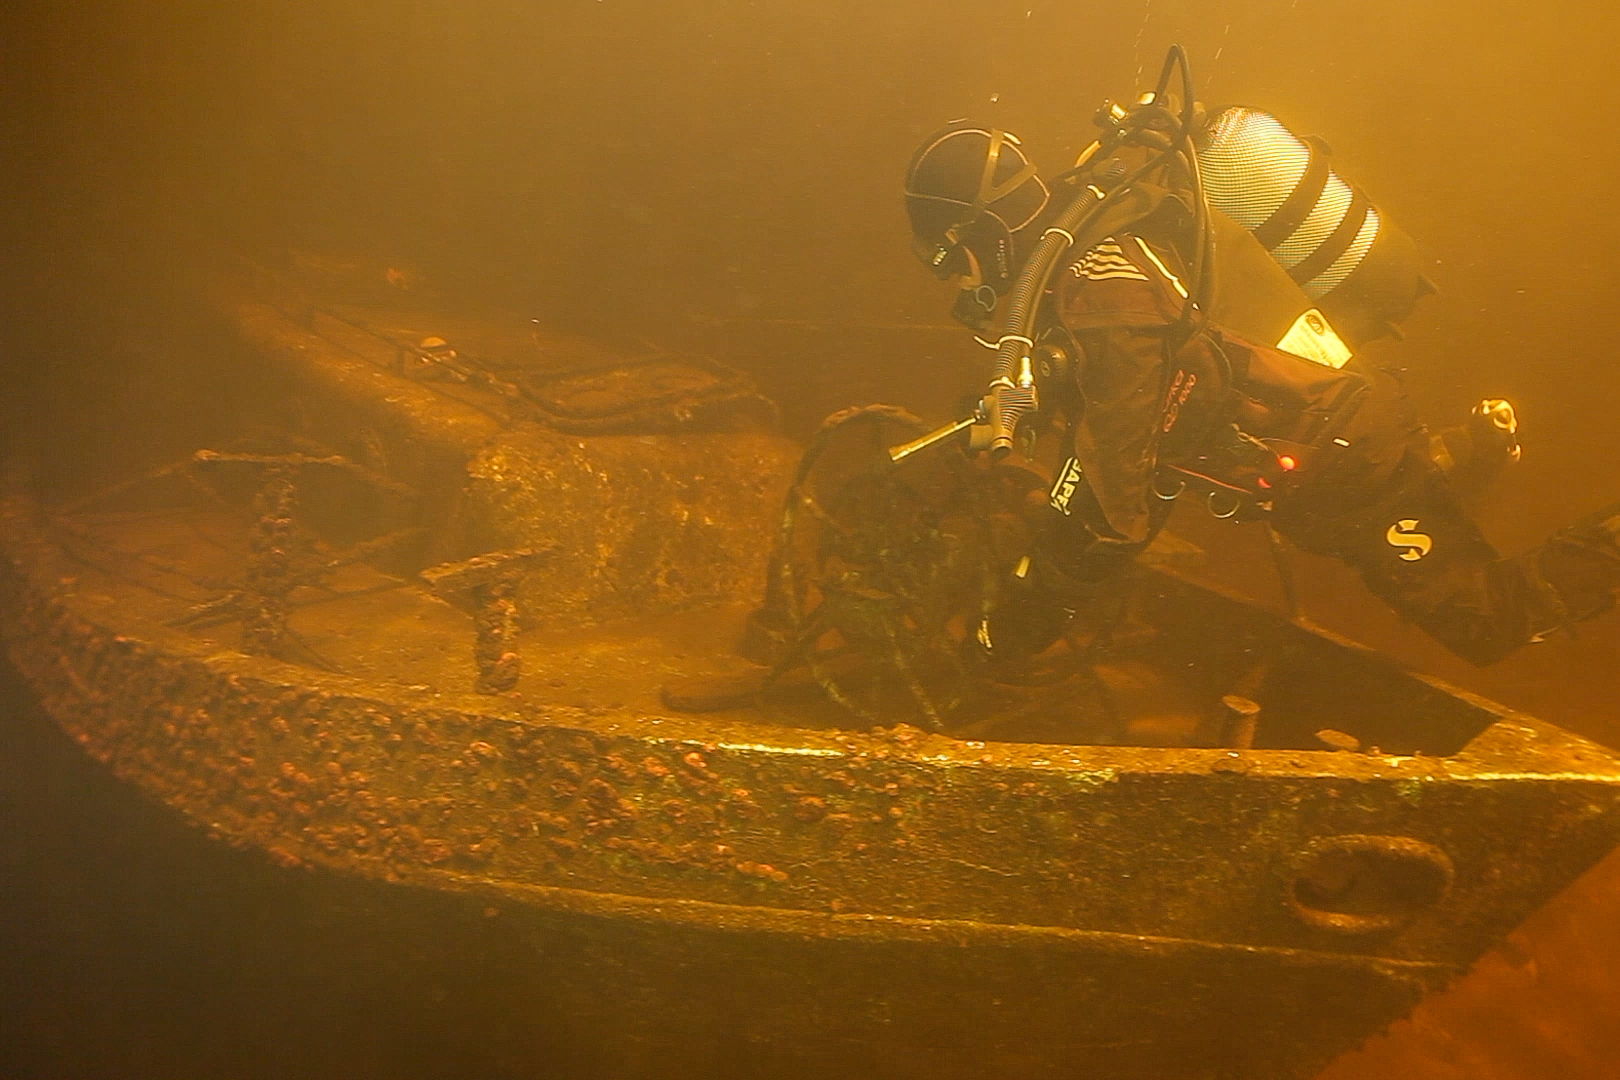 Uponnut 20-metrinen matkustajalaiva on säilynyt hyvin Laatokan kylmässä vedessä. Kuva: 1xpedition-tutkimushankkeen arkisto